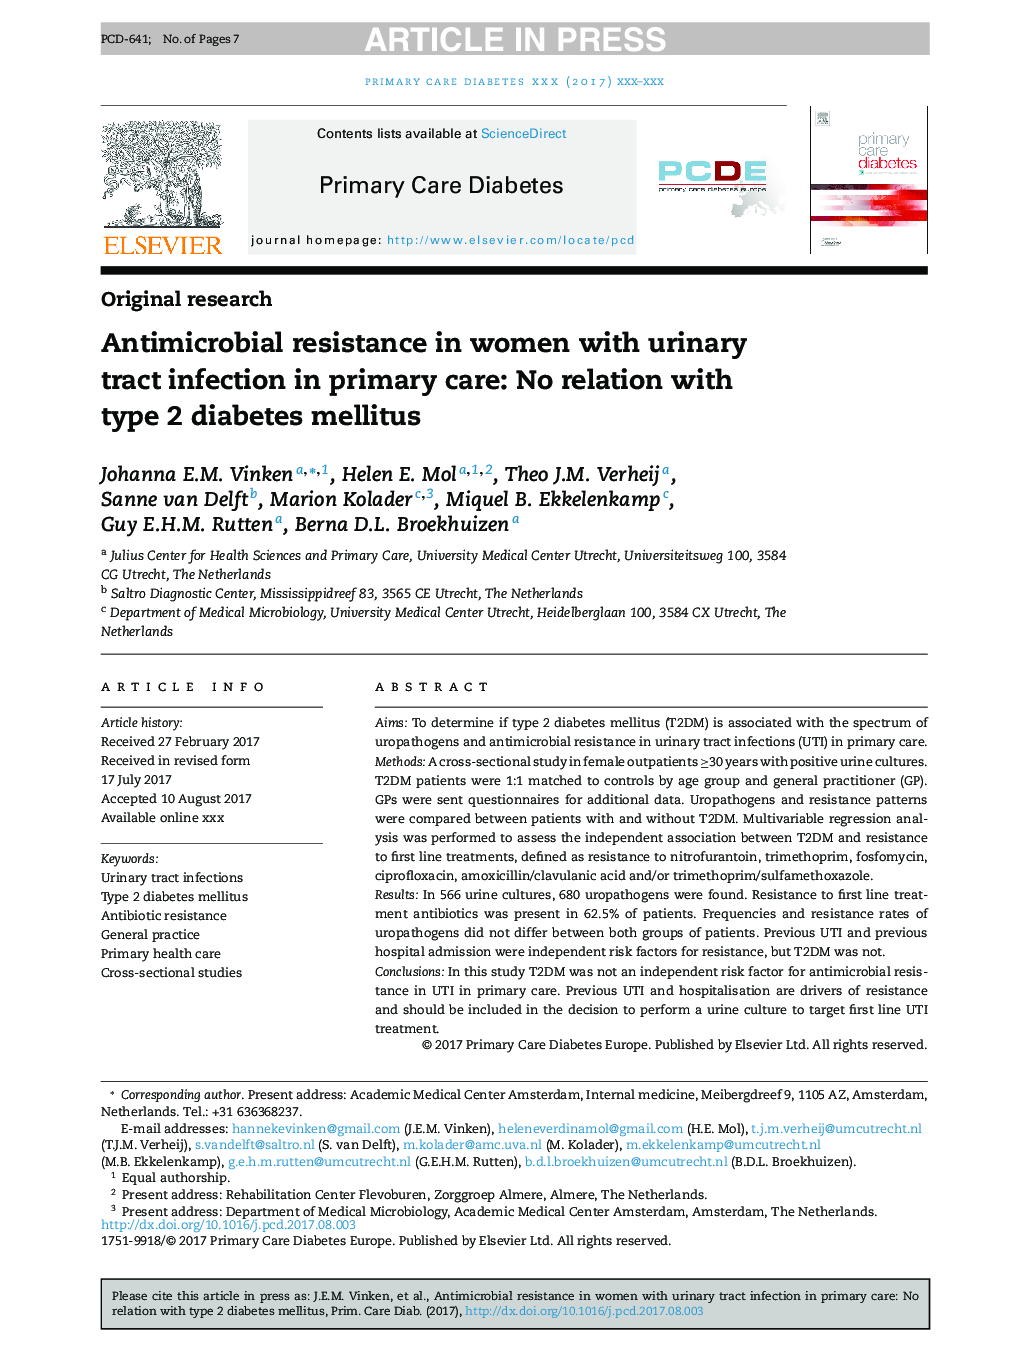 مقاومت ضد میکروبی در زنان مبتلا به عفونت ادراری در مراقبت های اولیه: عدم ارتباط با دیابت نوع 2 